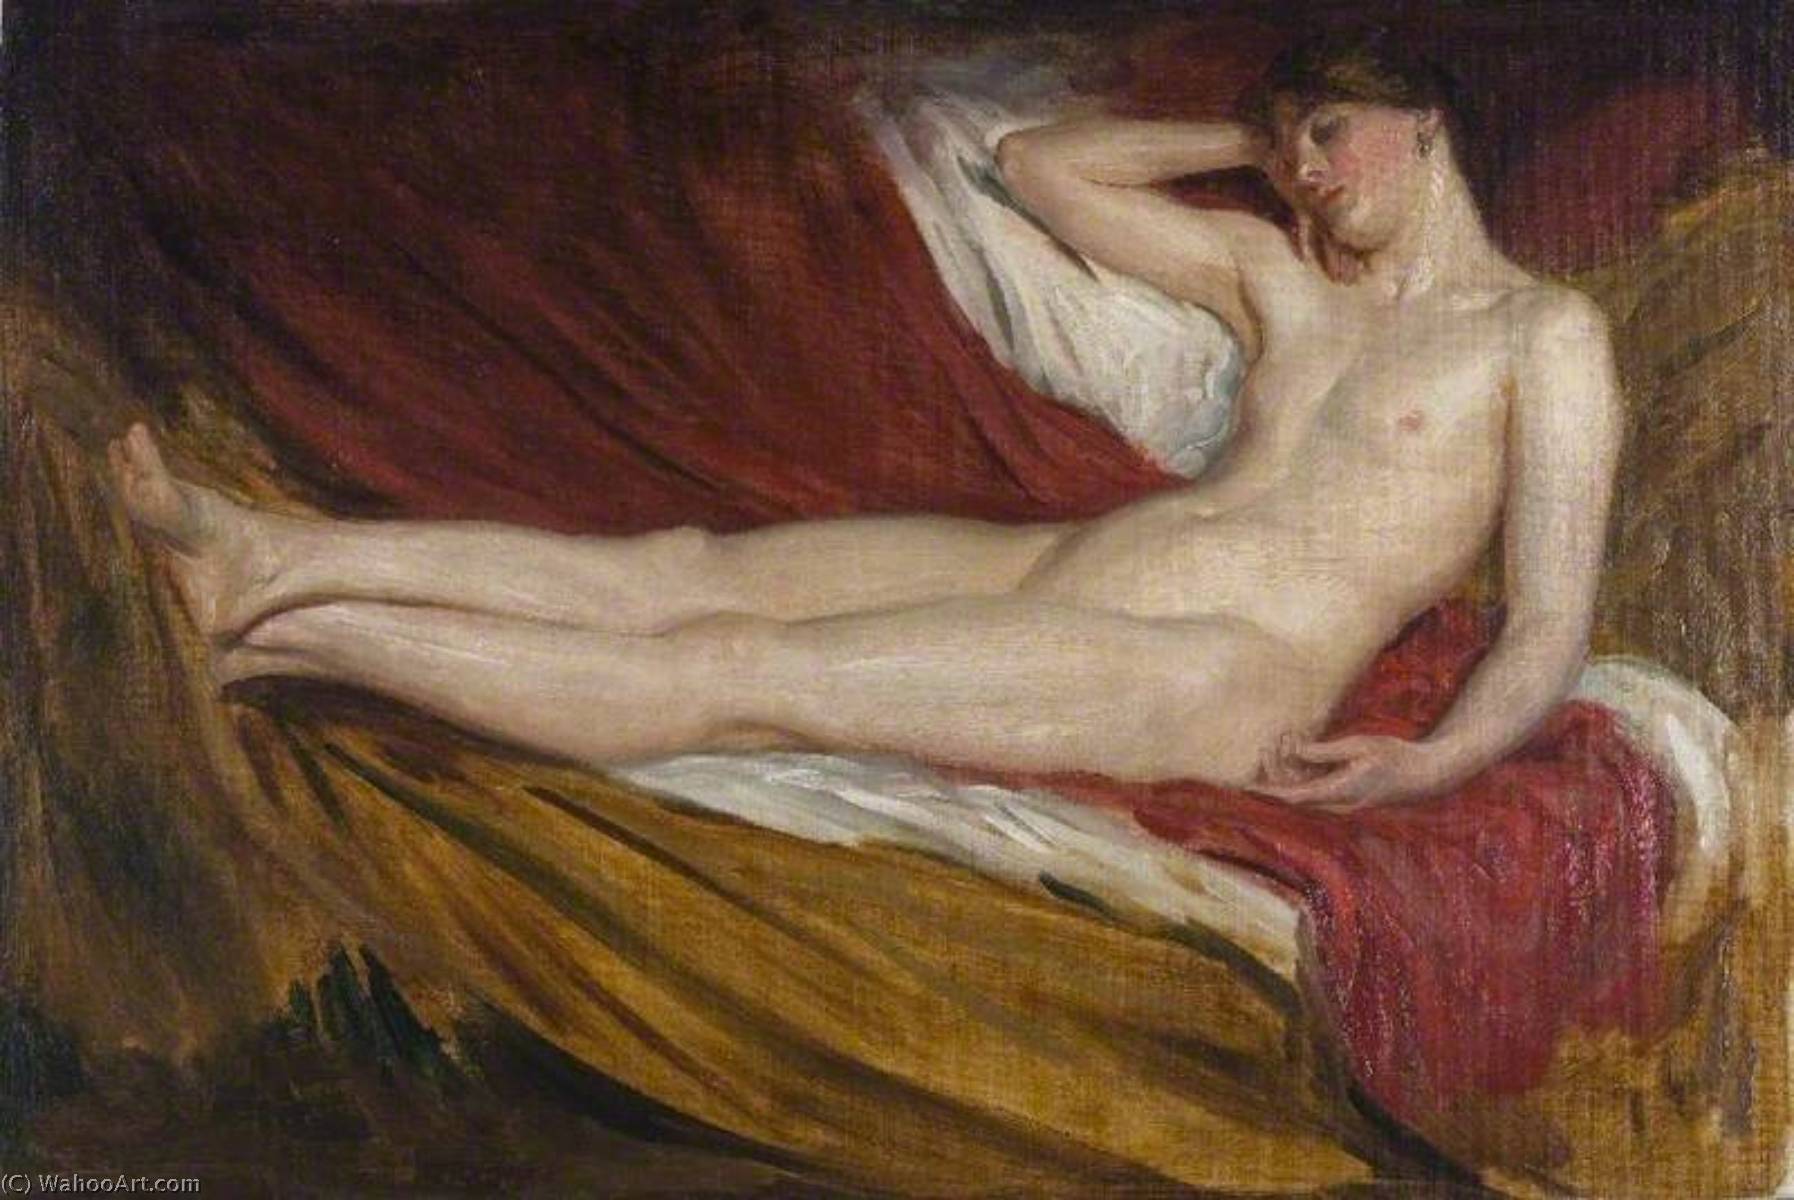 WikiOO.org - Encyclopedia of Fine Arts - Målning, konstverk Brian Hatton - Reclining Nude